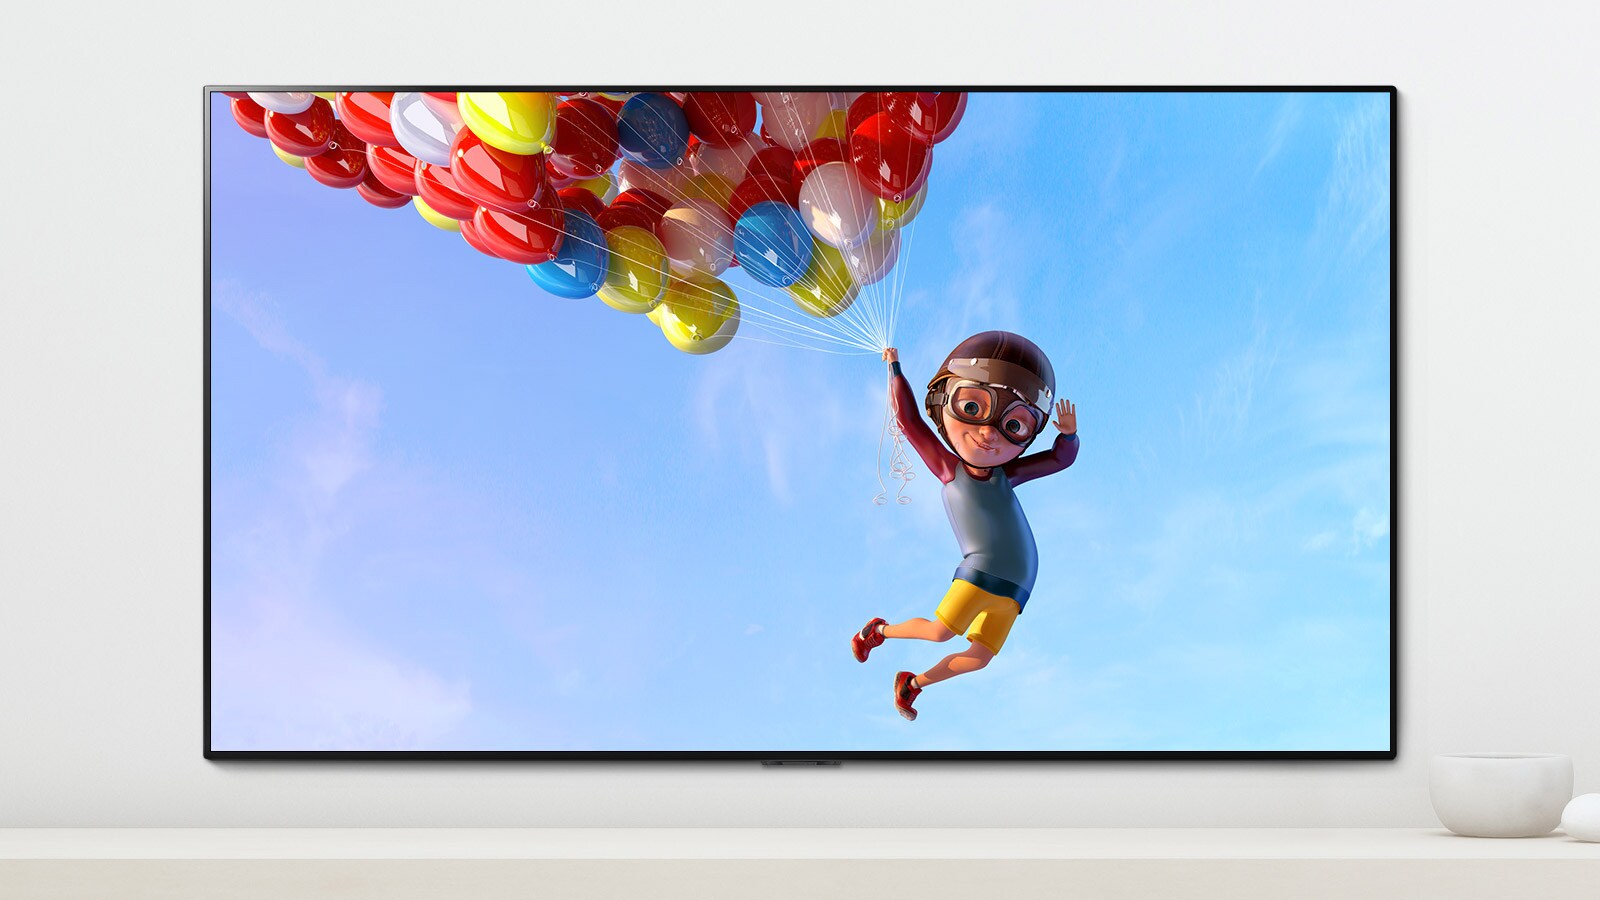 Una escena de una animación que muestra a un niño colgando de globos de colores en el cielo que se muestra en una pantalla de TV